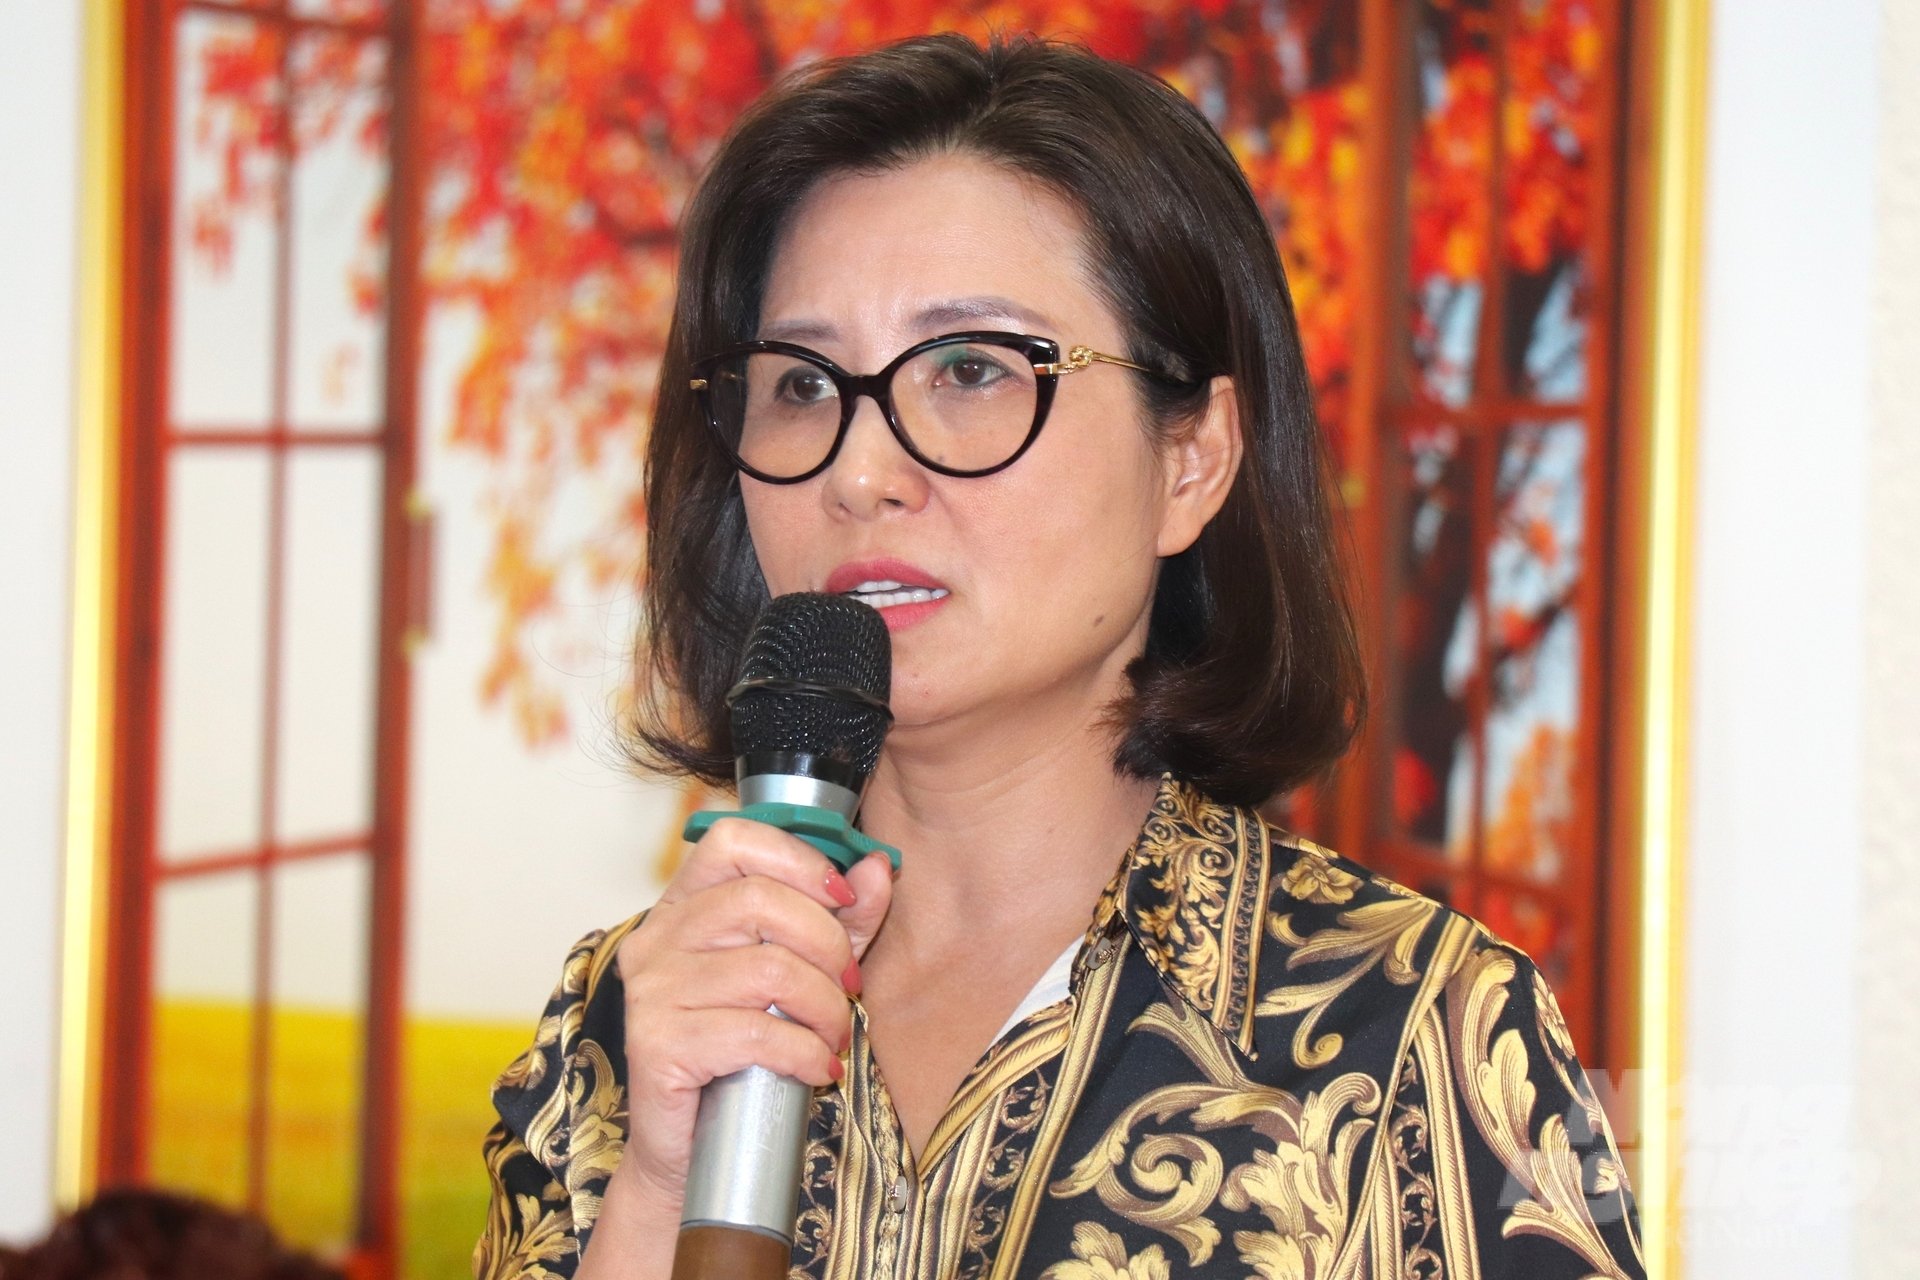 Bà Nguyễn Thị Hoàng Yến, Phó Cục trưởng Cục Kinh tế hợp tác và Phát triển nông thôn nhìn nhận, việc tiếp cận đối tượng lao động là một bài toán khó. Ảnh: Kim Anh.